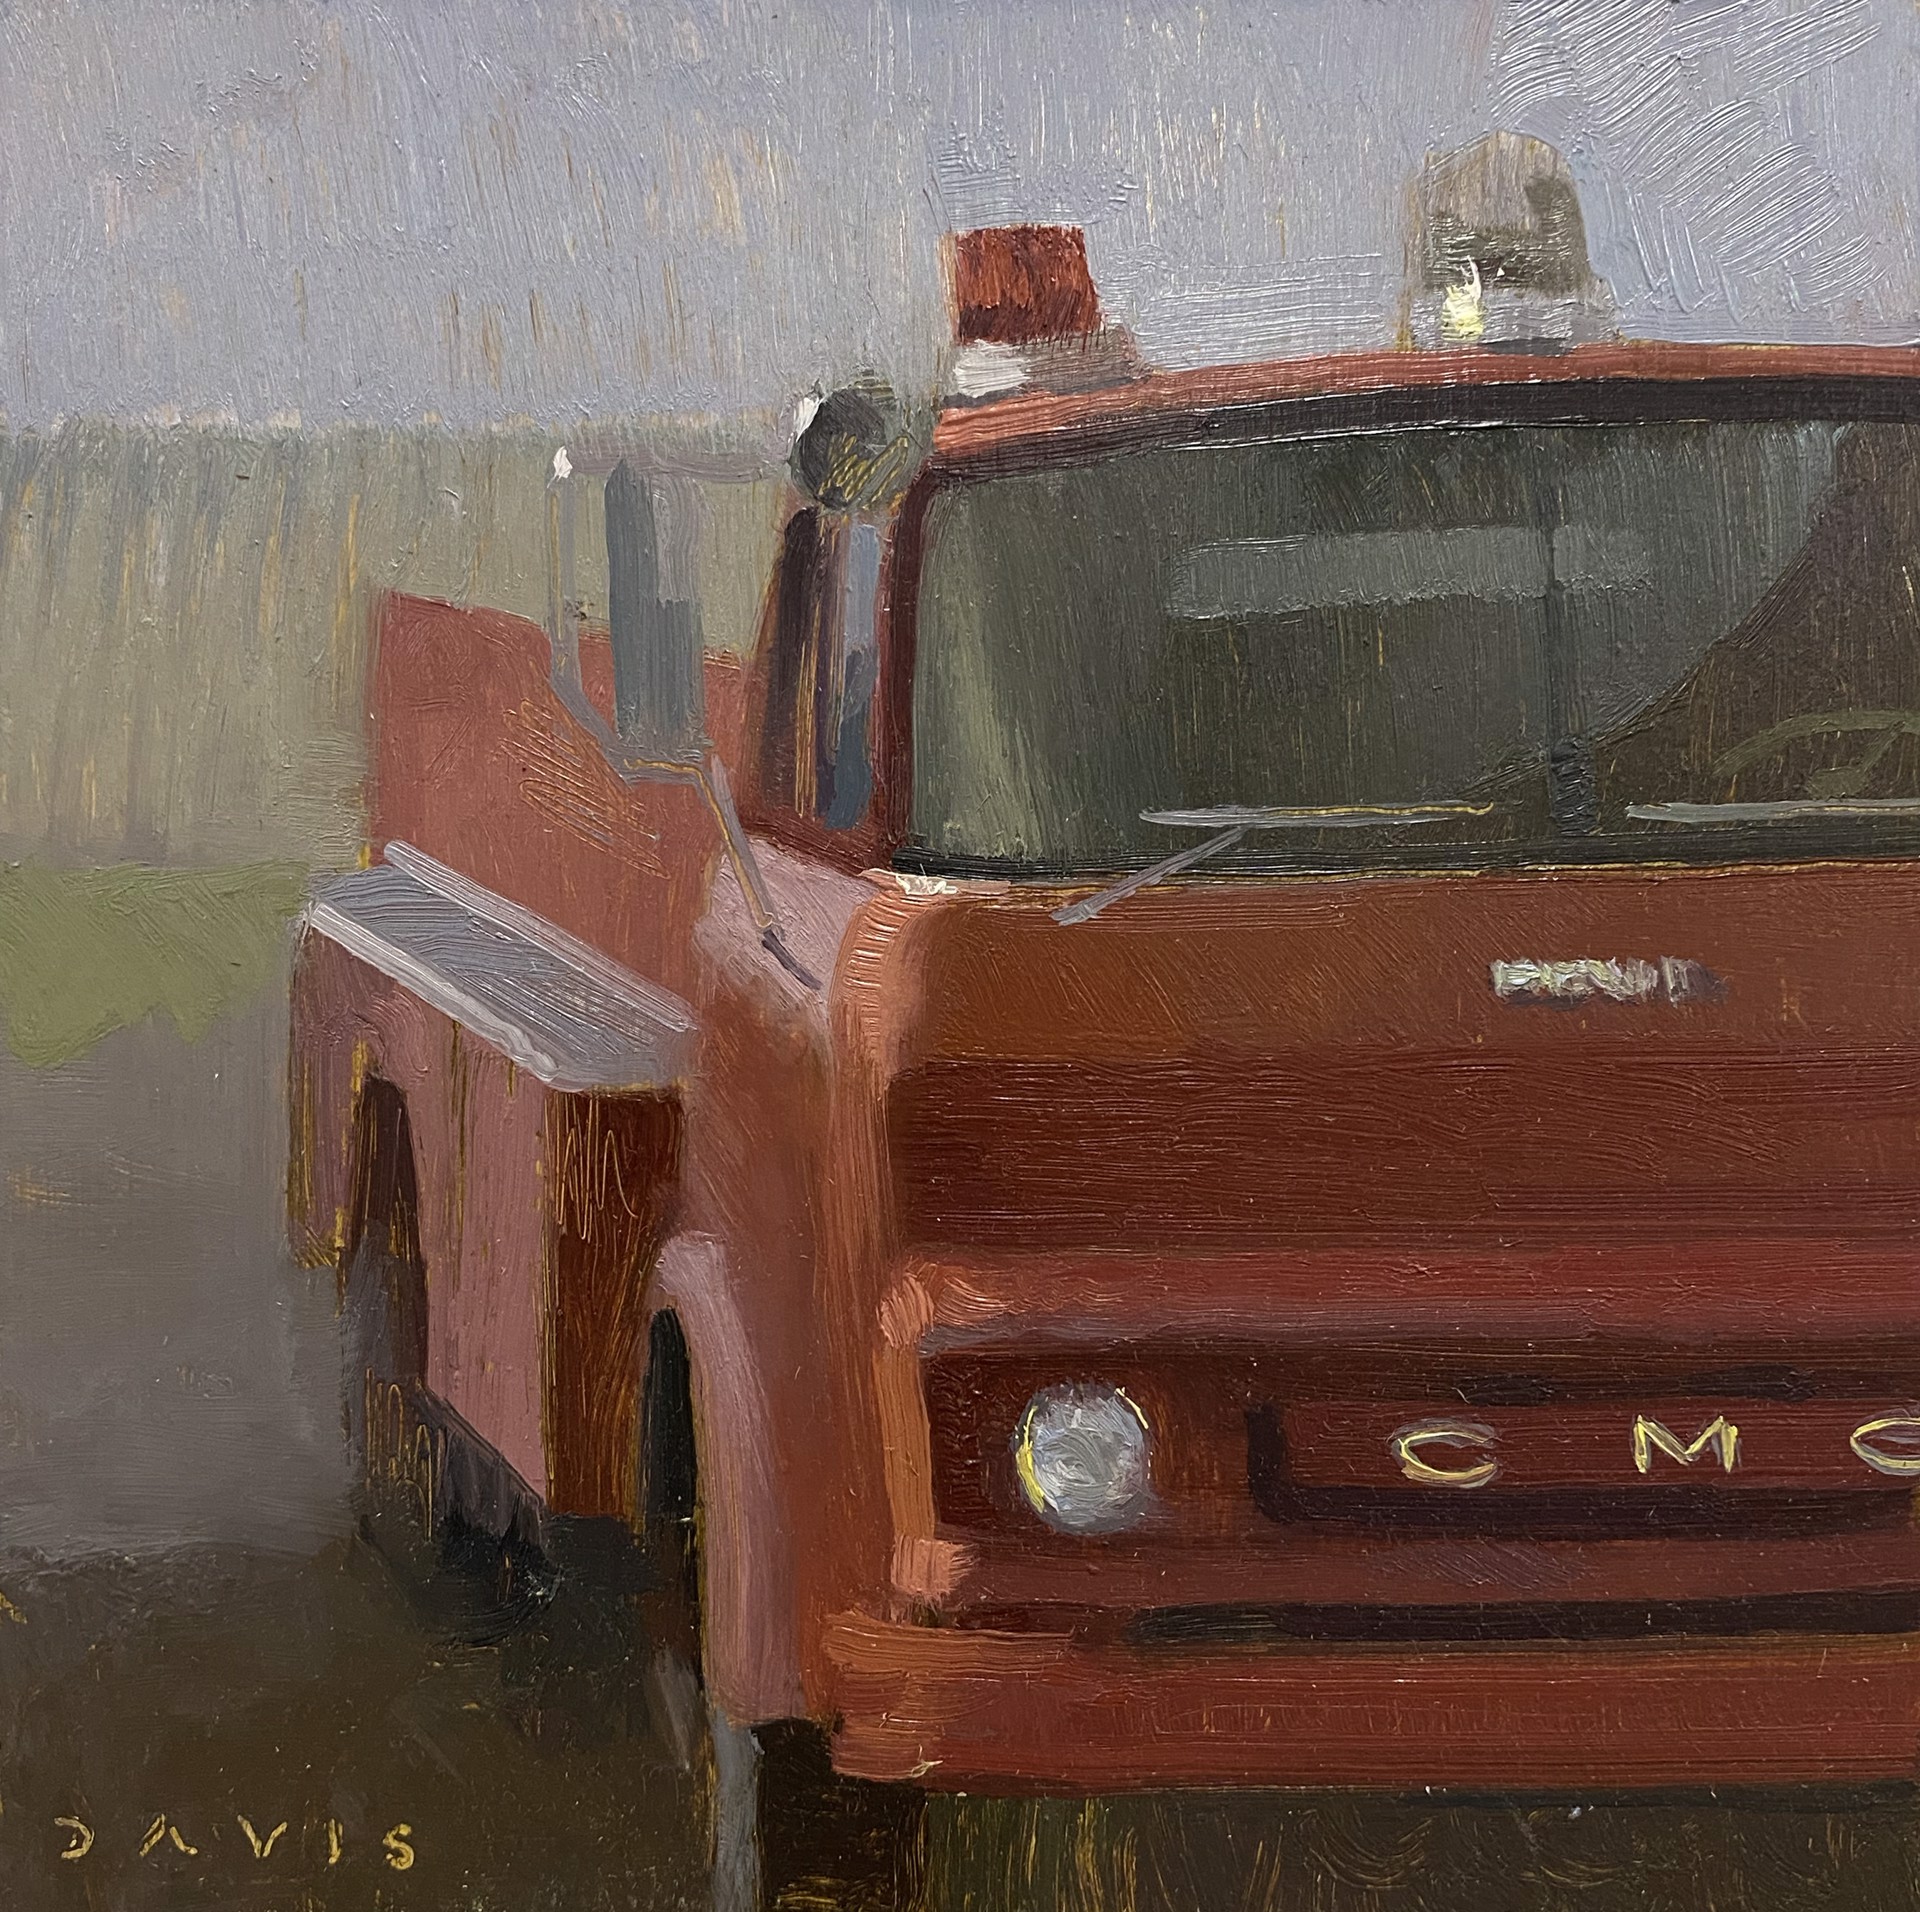 Fire Truck by Brad Davis